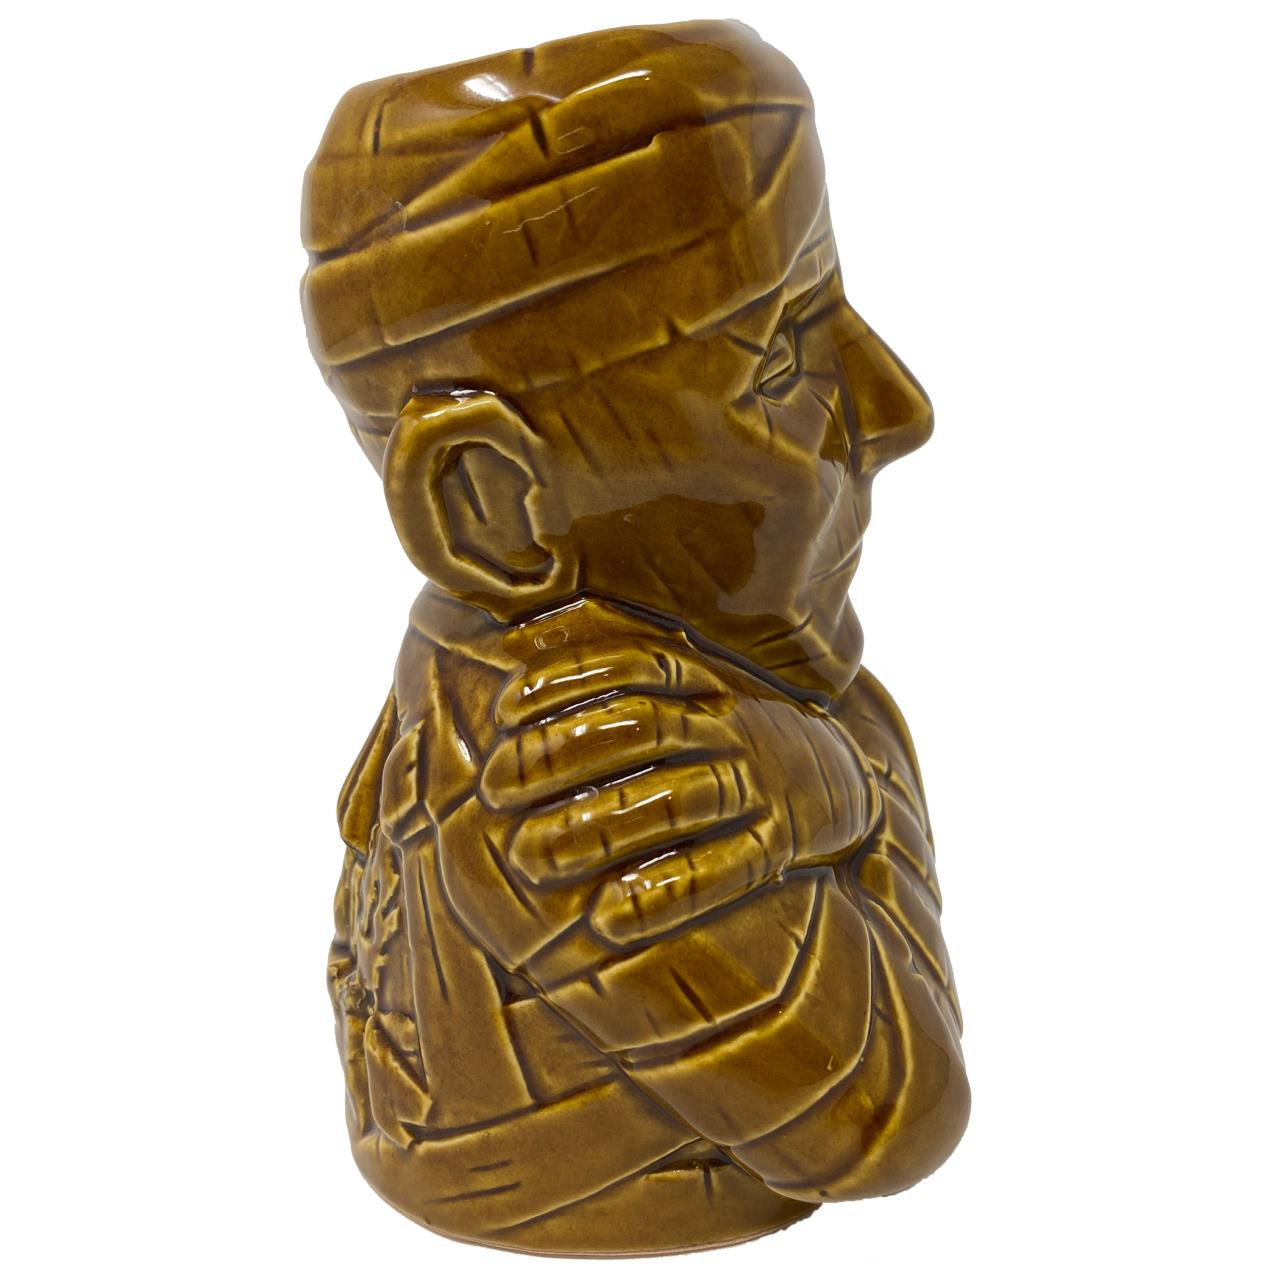 The Mummy Ceramic Tiki Mug - Brown* - Retro-a-go-go!